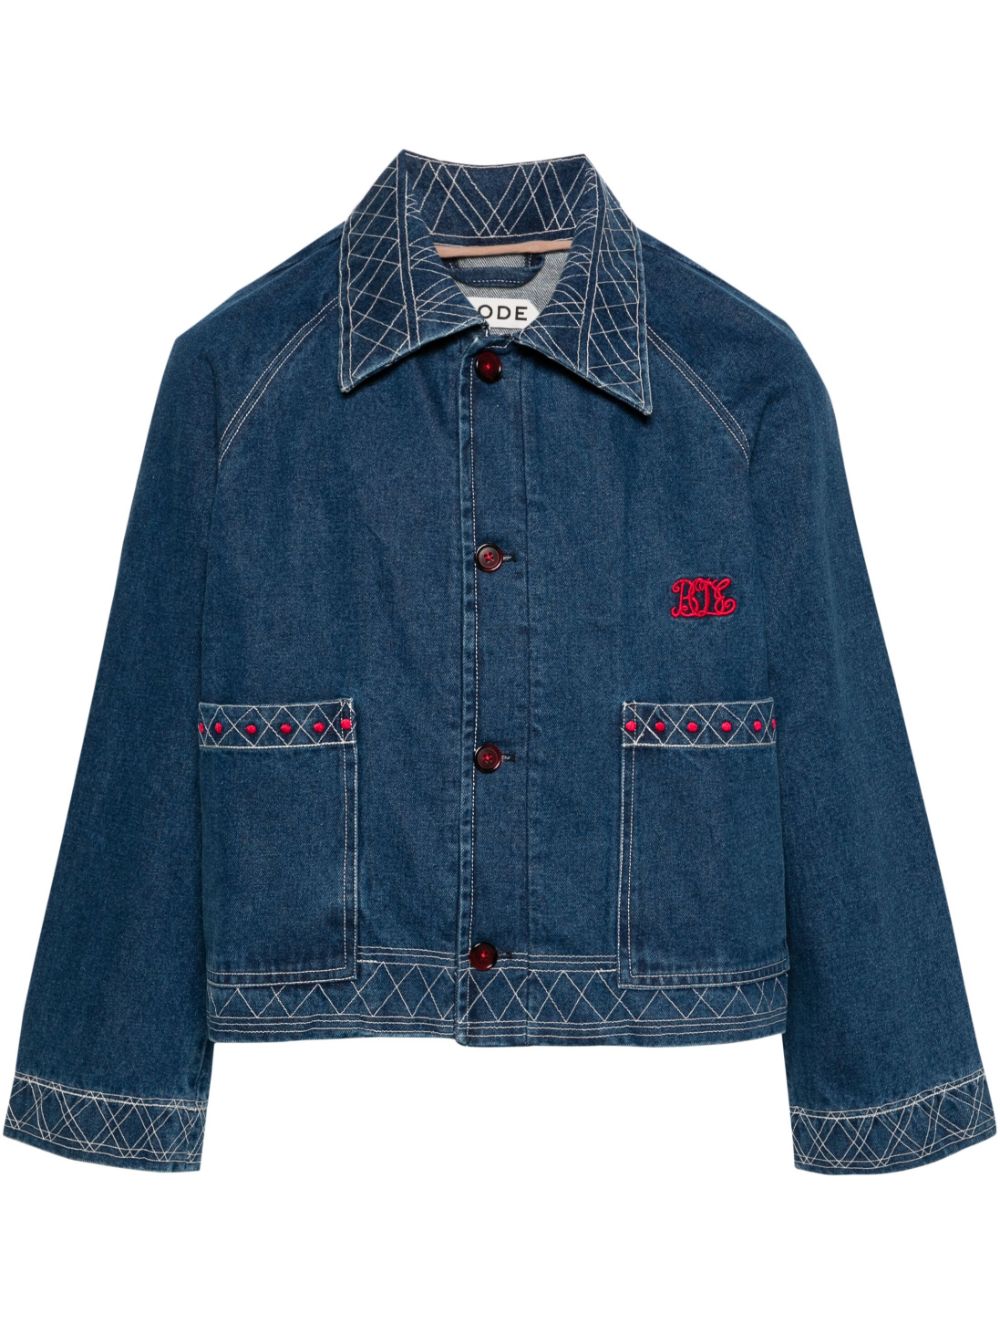 motif-embroidered denim jacket